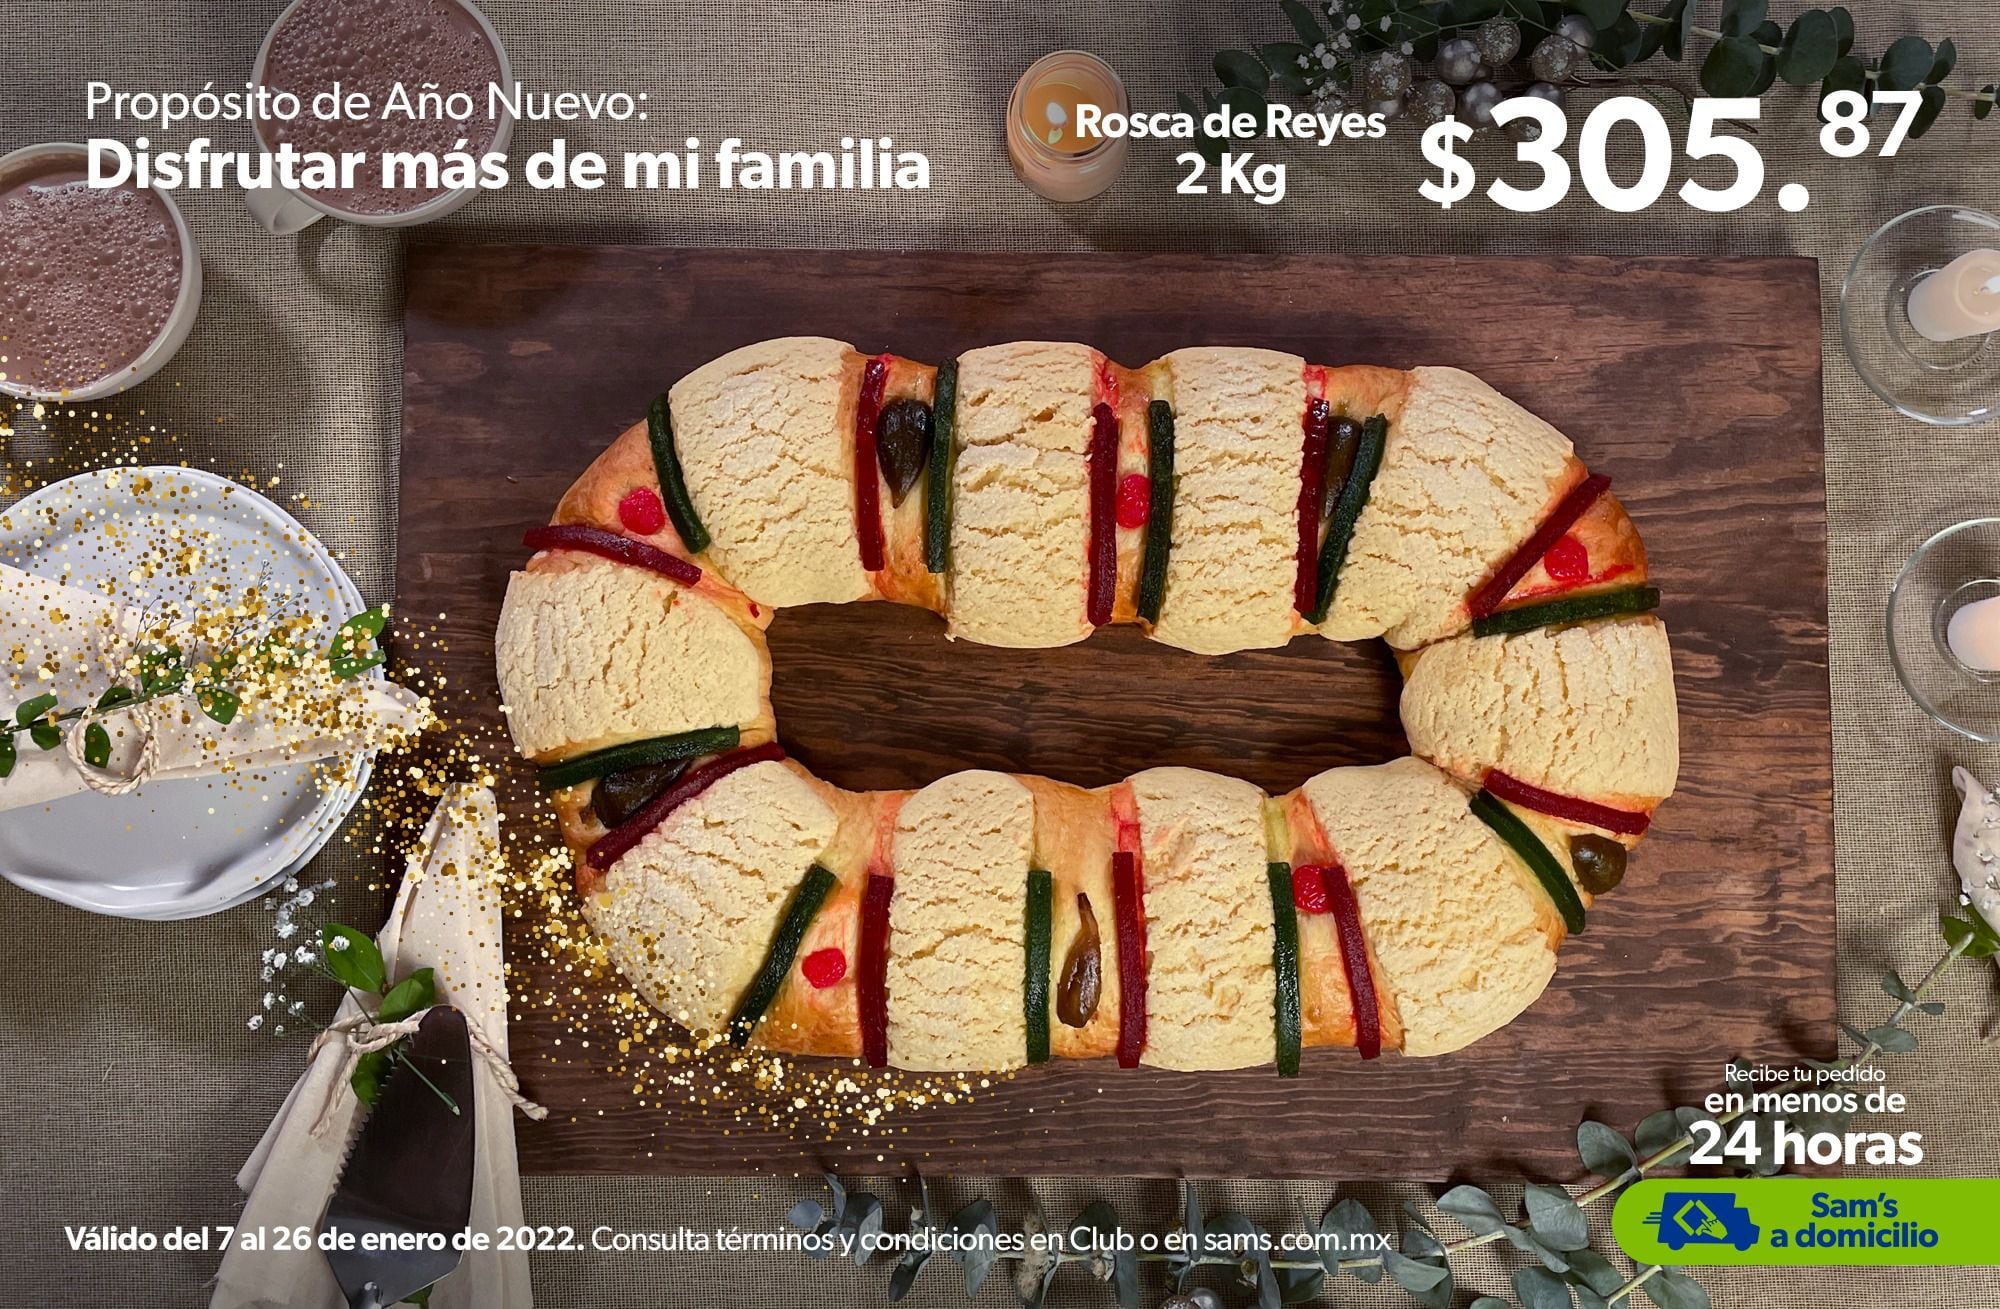 Cuánto cuesta la Rosca de Reyes? Estos son los precios en La Esperanza,  Sam's, Walmart y Costco